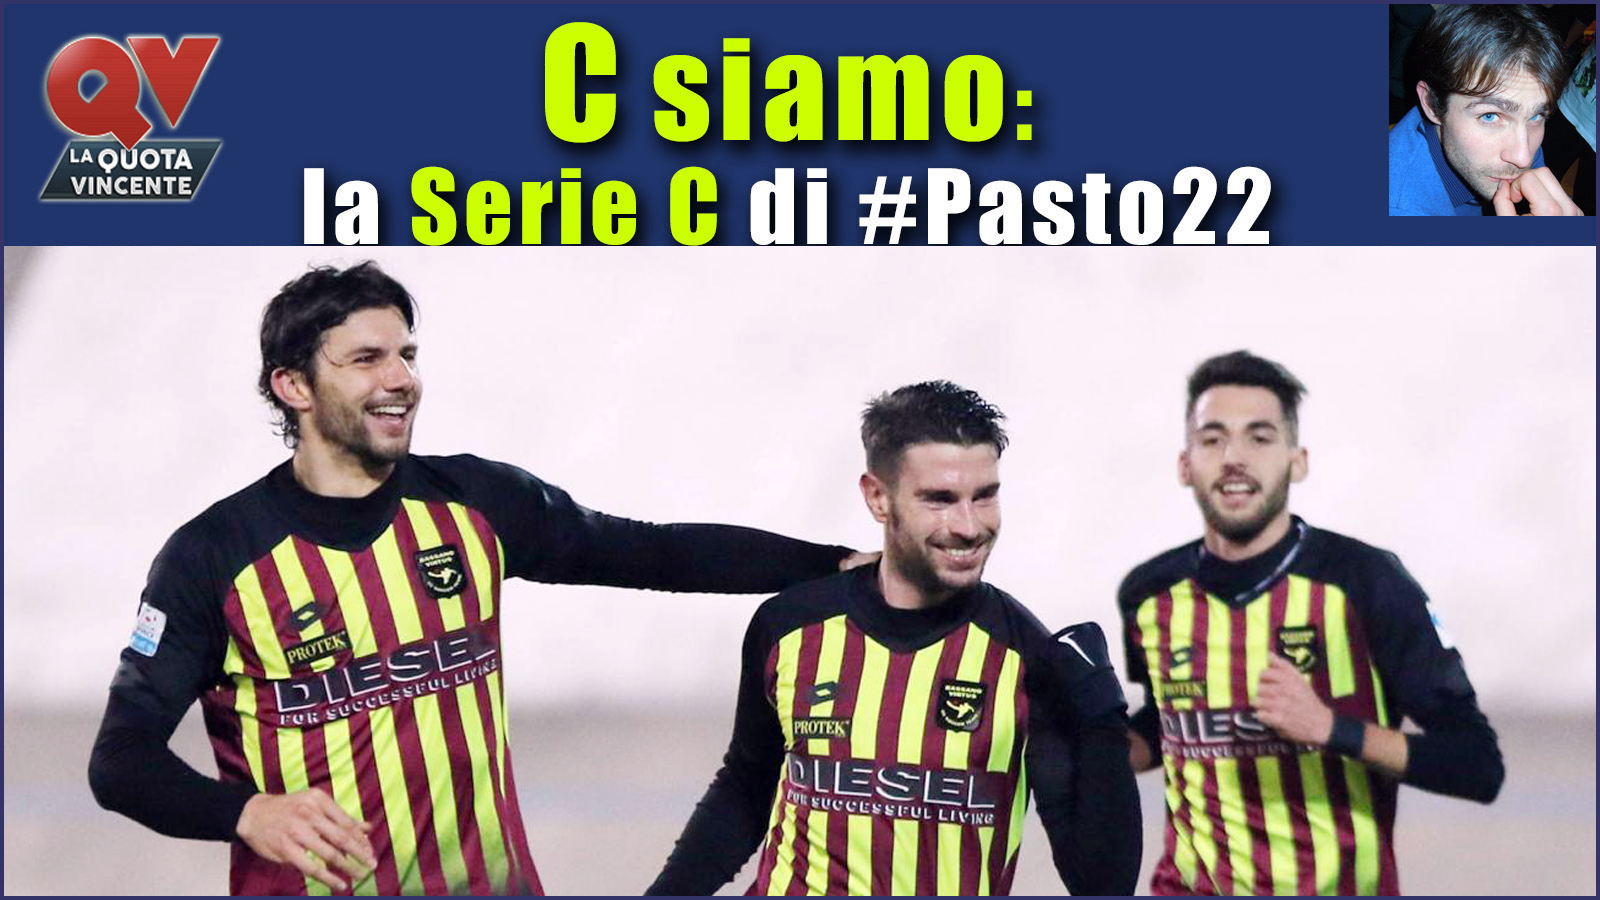 Pronostici Serie C sabato 27 gennaio: #Csiamo, il blog di #Pasto22